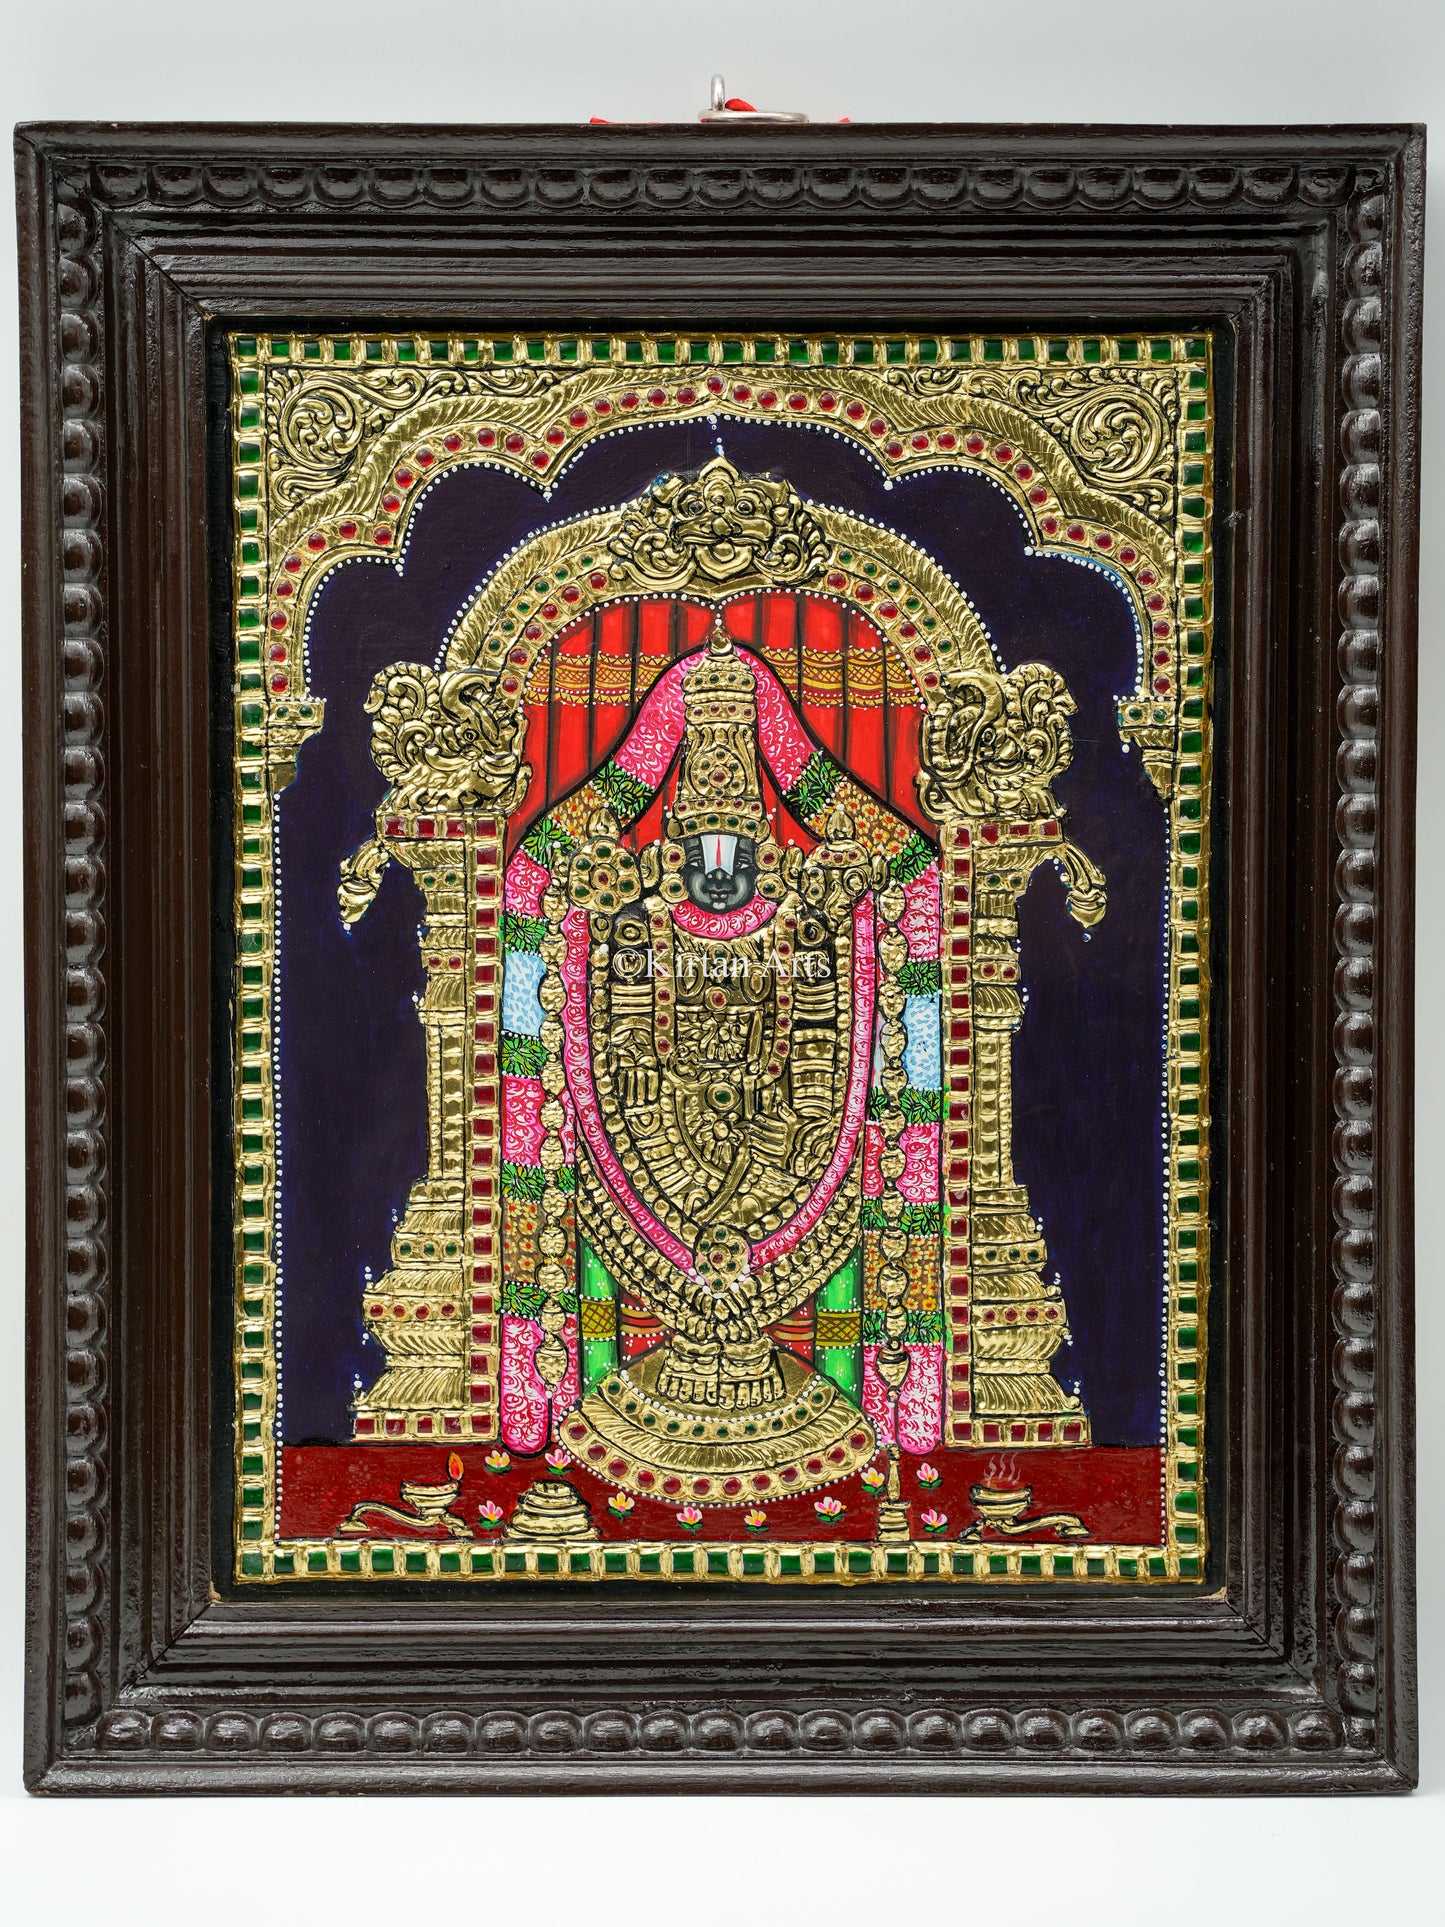 Tirupati Balaji Tanjore Painting 18x15